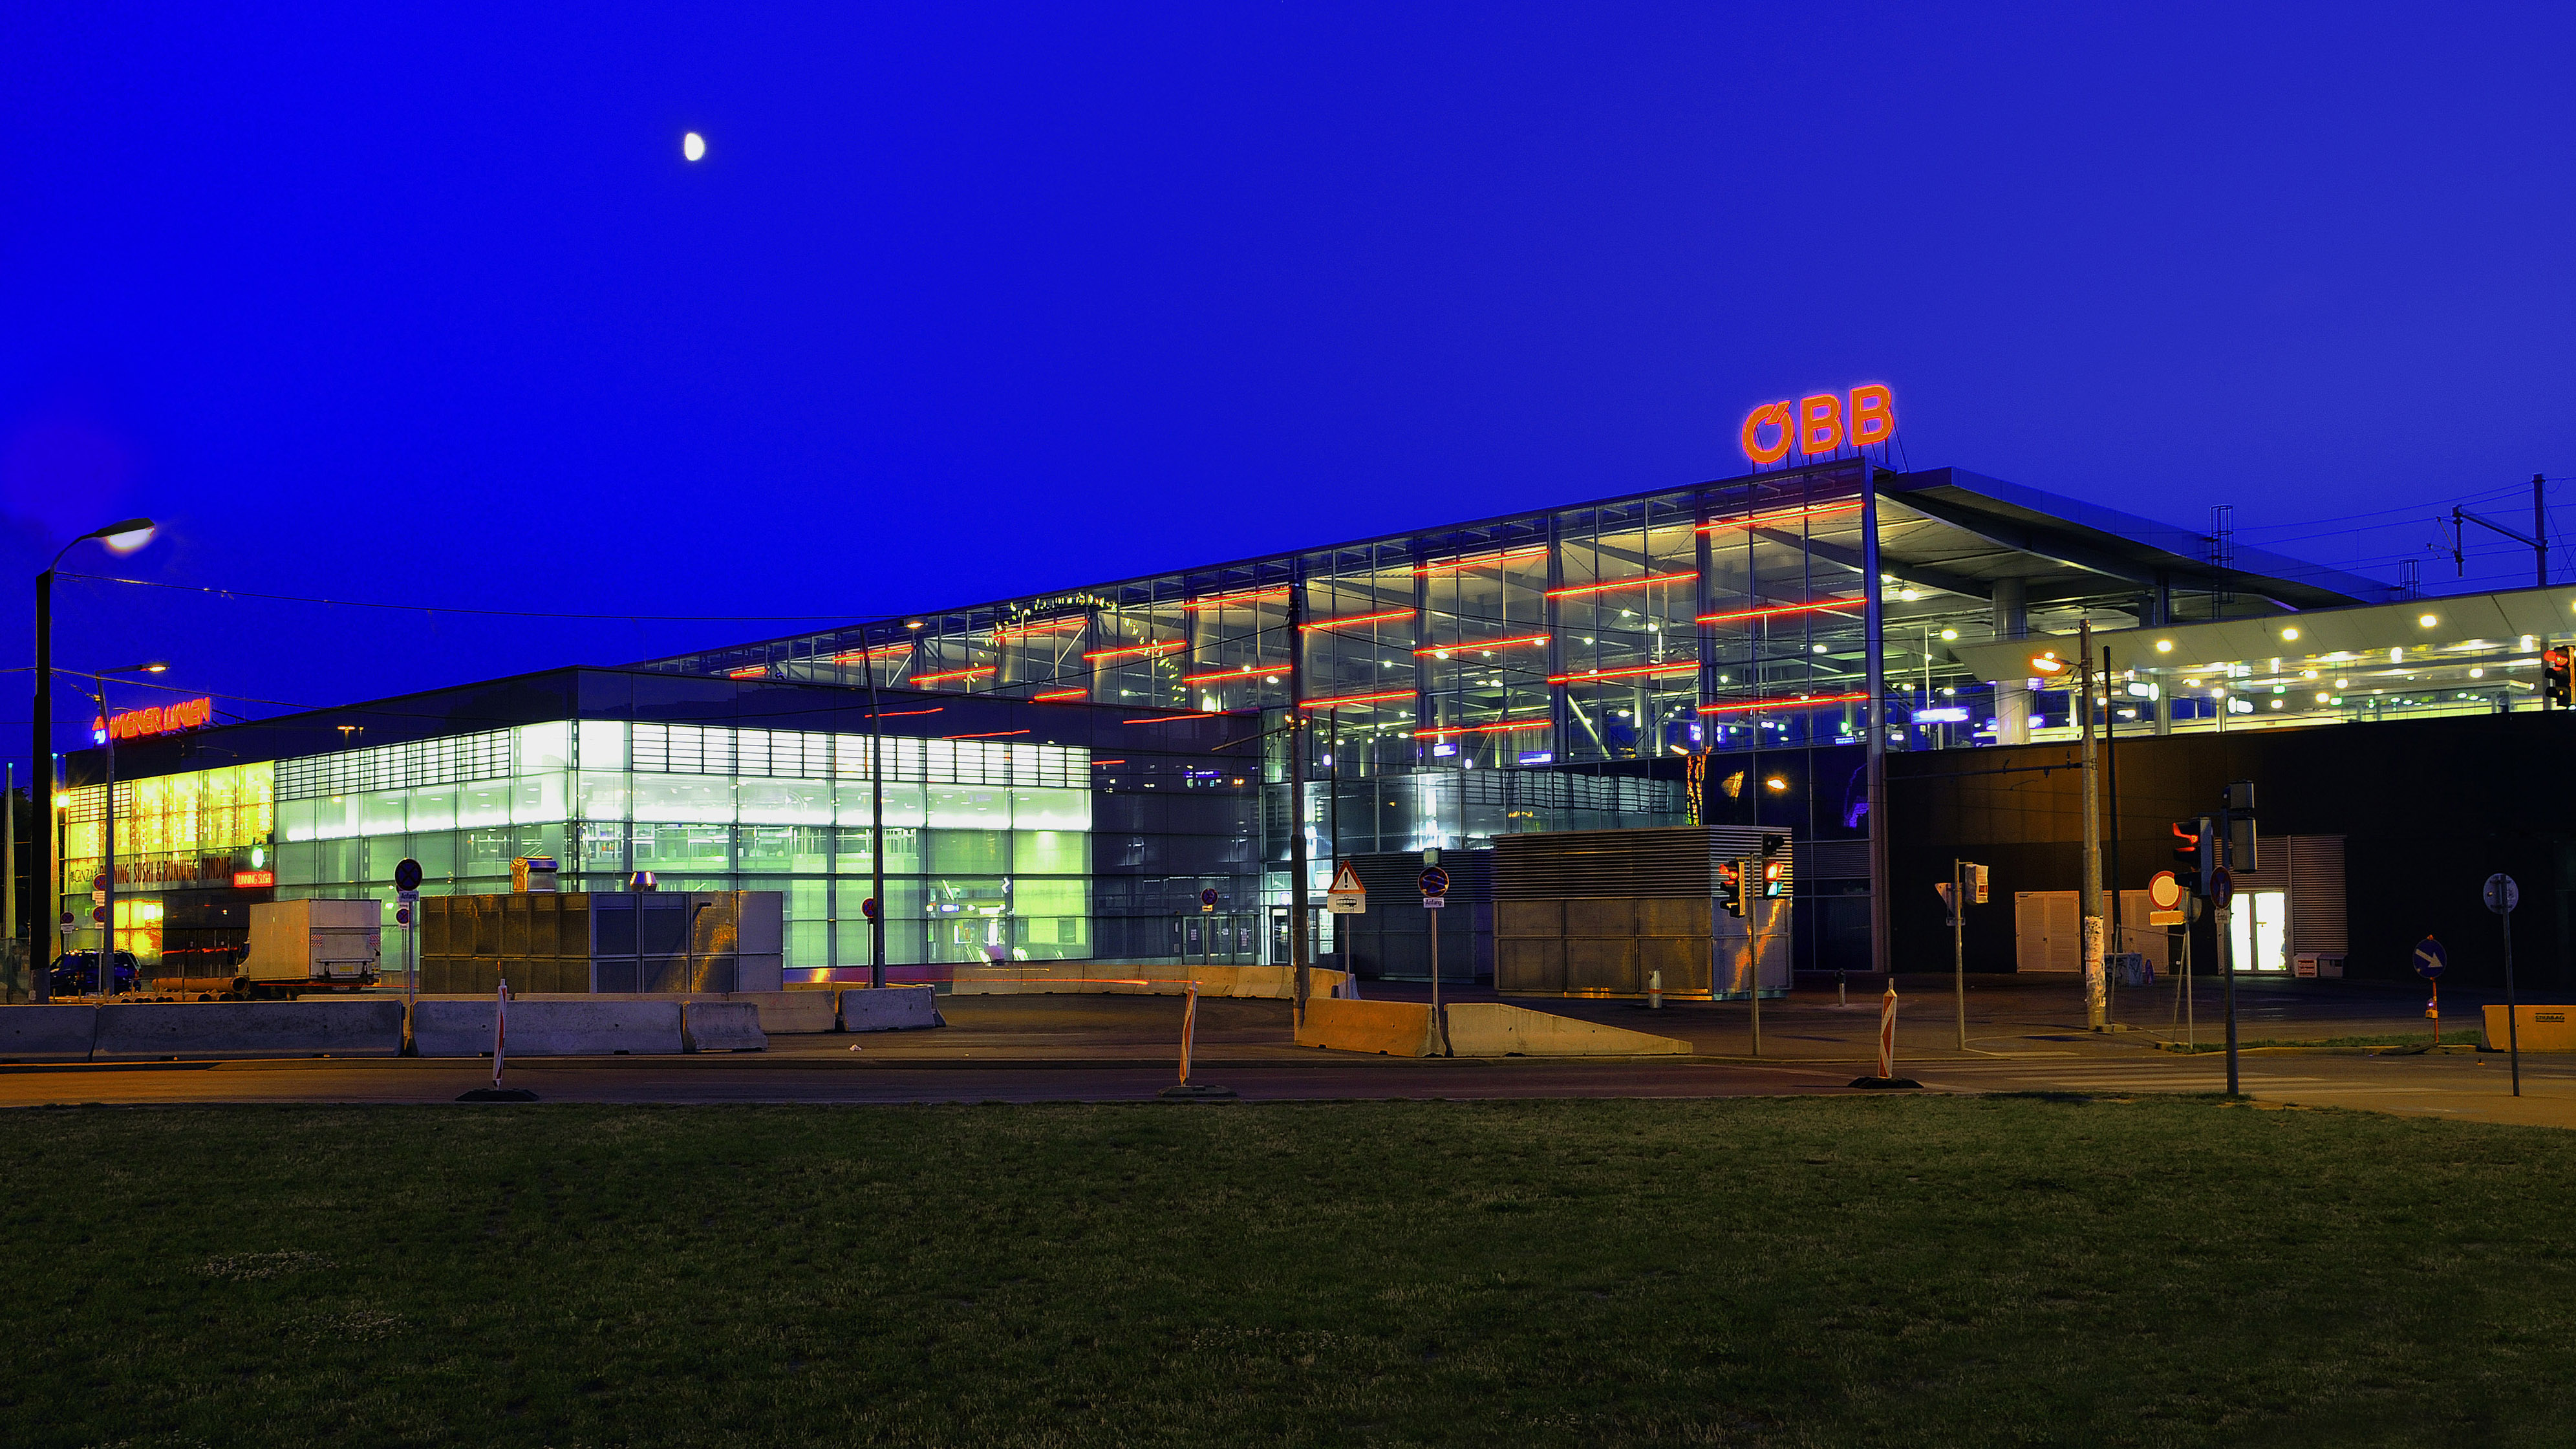 Ansicht des Bahnhofs Praterstern bei Nacht: das Gebäude ist hell erleuchtet, der Mond scheint und die Straße davor ist leer.